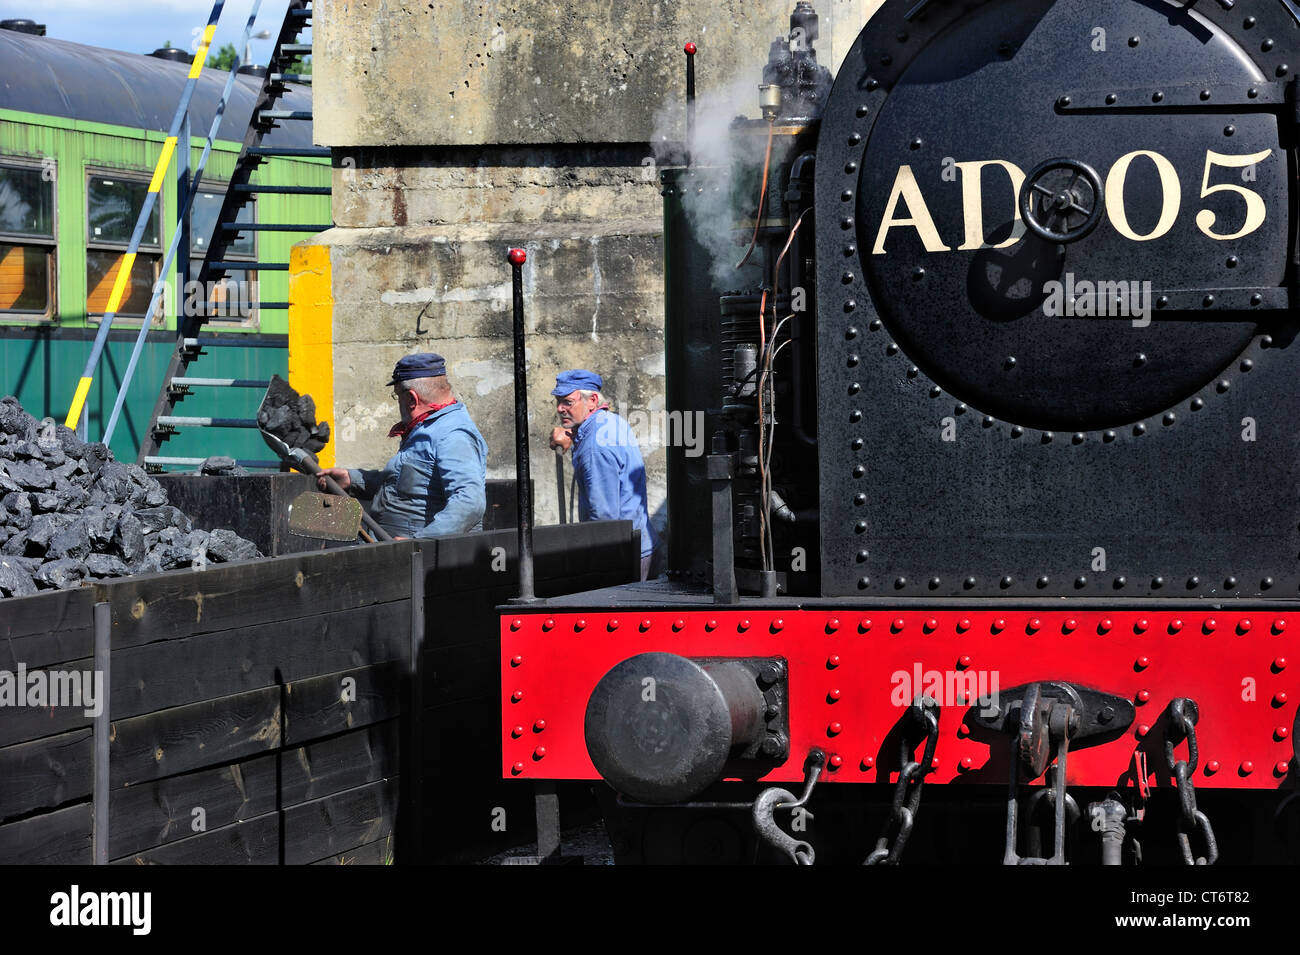 Les hommes chargement de charbon comme combustible pour les trains à vapeur au dépôt du Chemin de fer à vapeur des Trois Vallées à Mariembourg, Belgique Banque D'Images